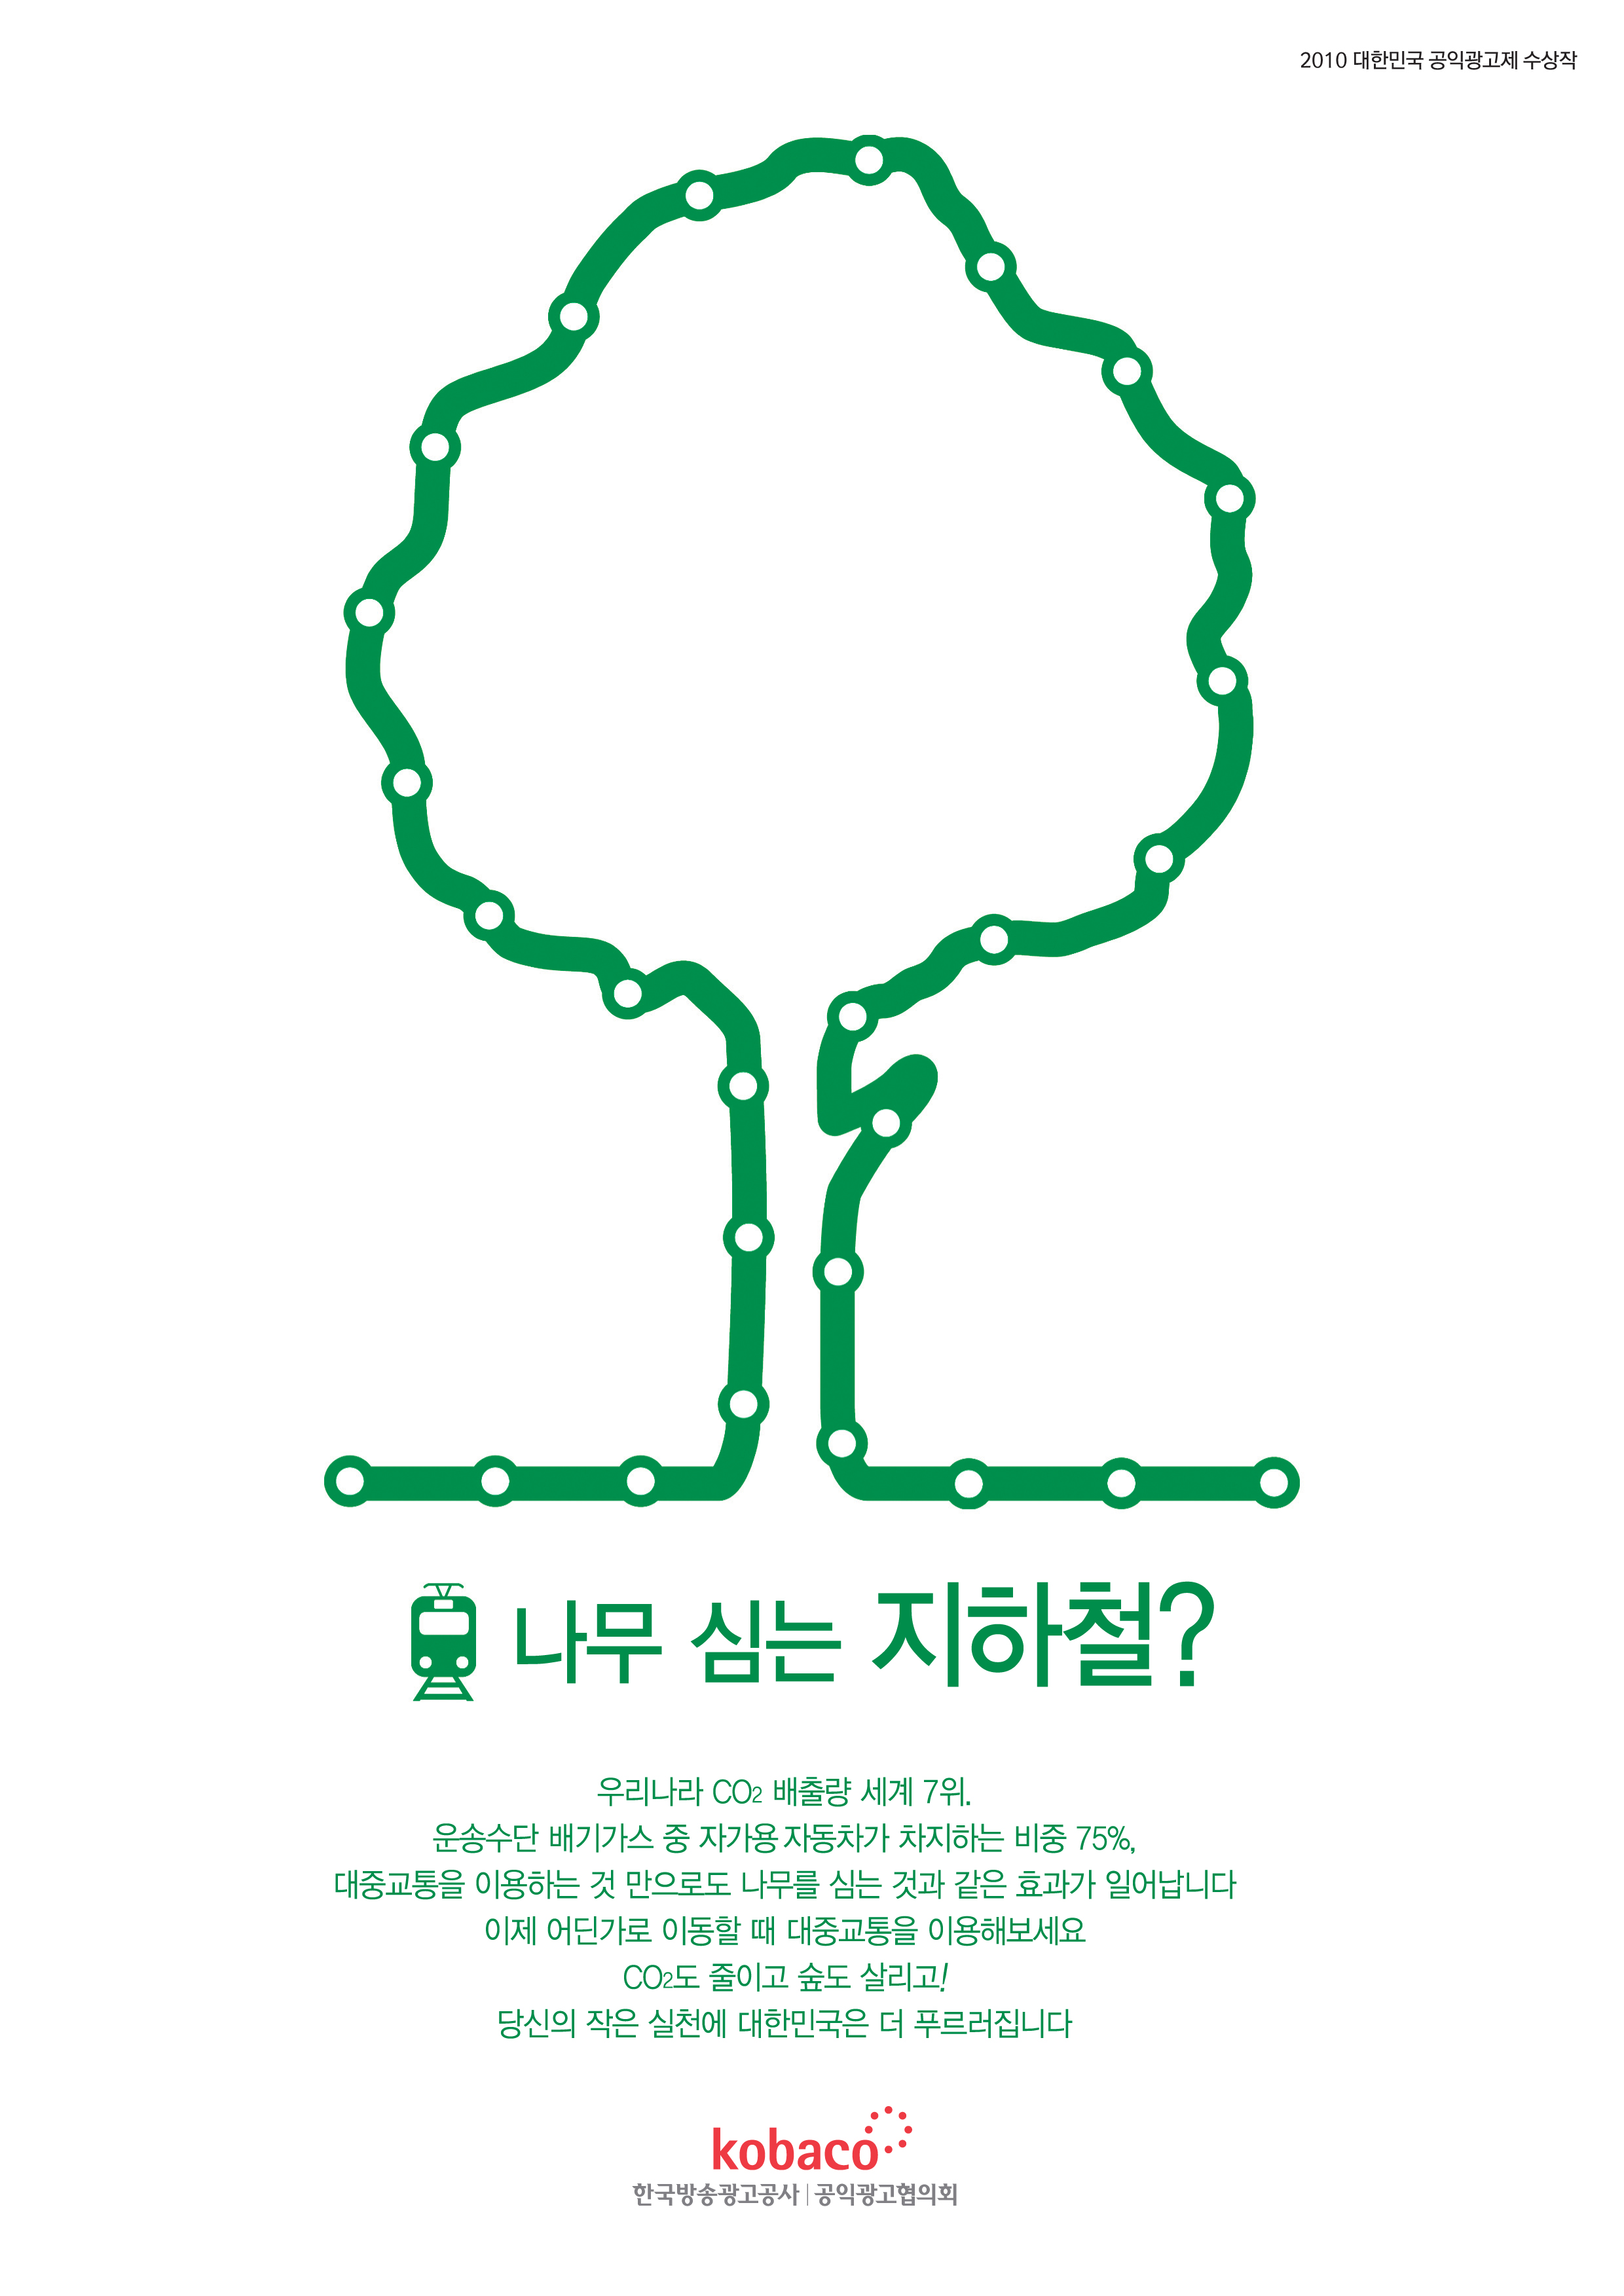 녹색교통 푸른지구_나무(공익광고제 일반부 동상)